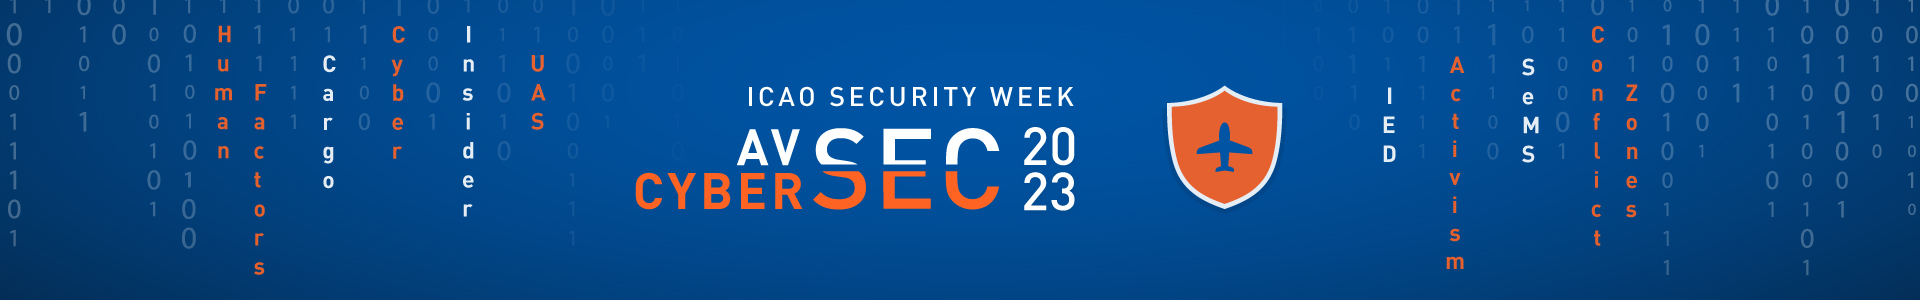 Security Week 2023 Web banner.EN.png